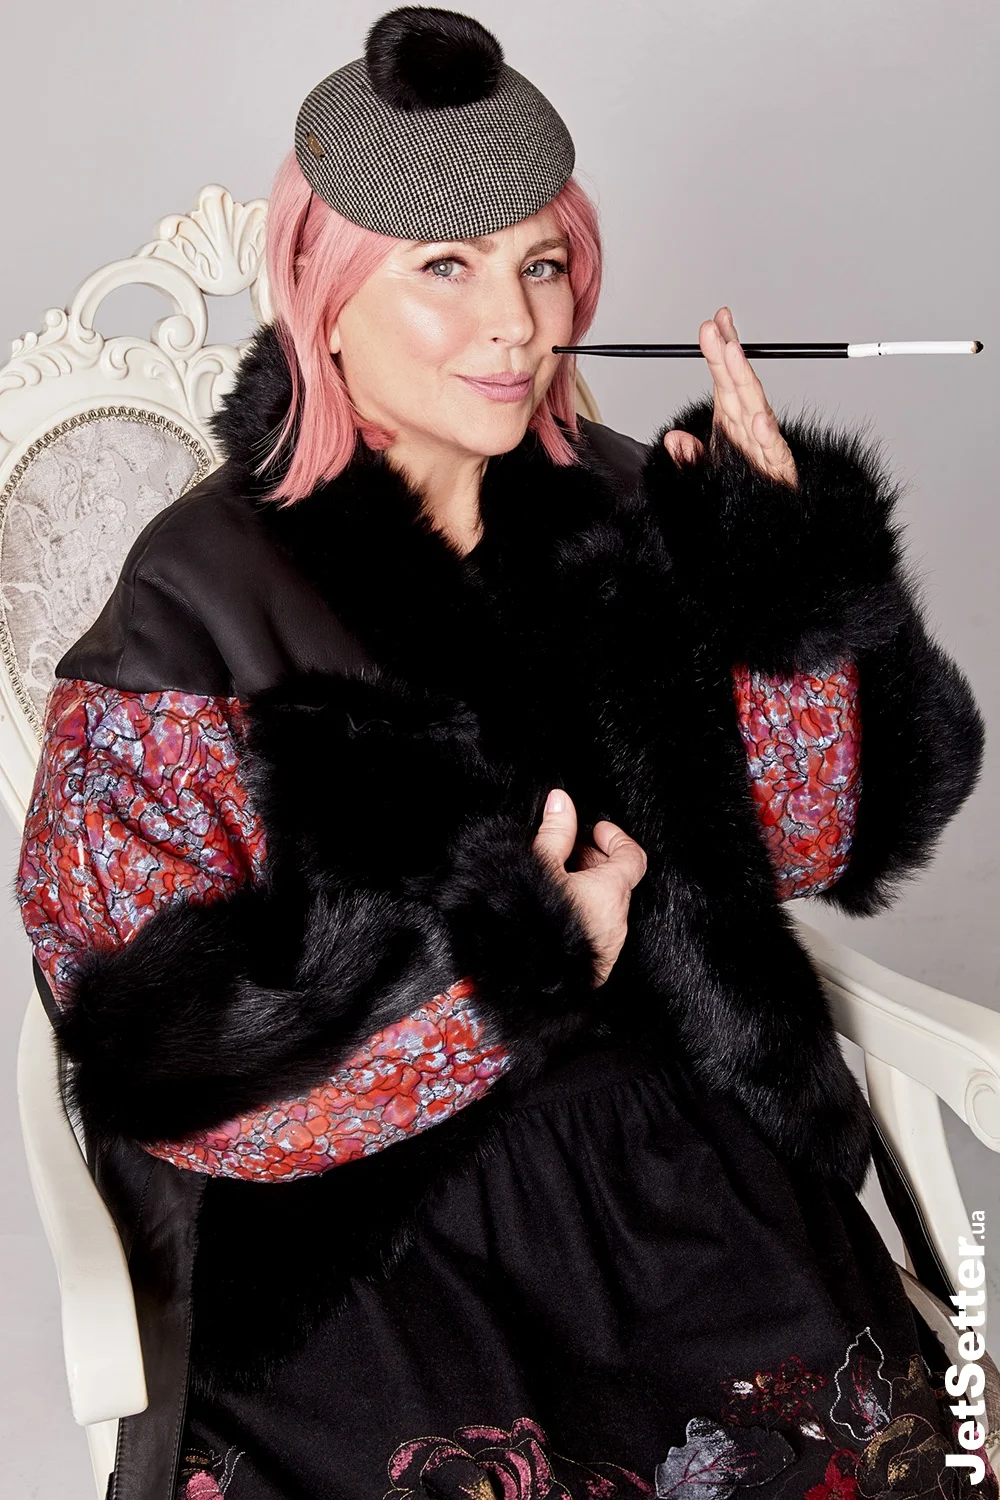 Ирокез, как у панка, и розовые волосы - Нина Матвиенко и Monatik в эпатажной фотосессии - фото 377612